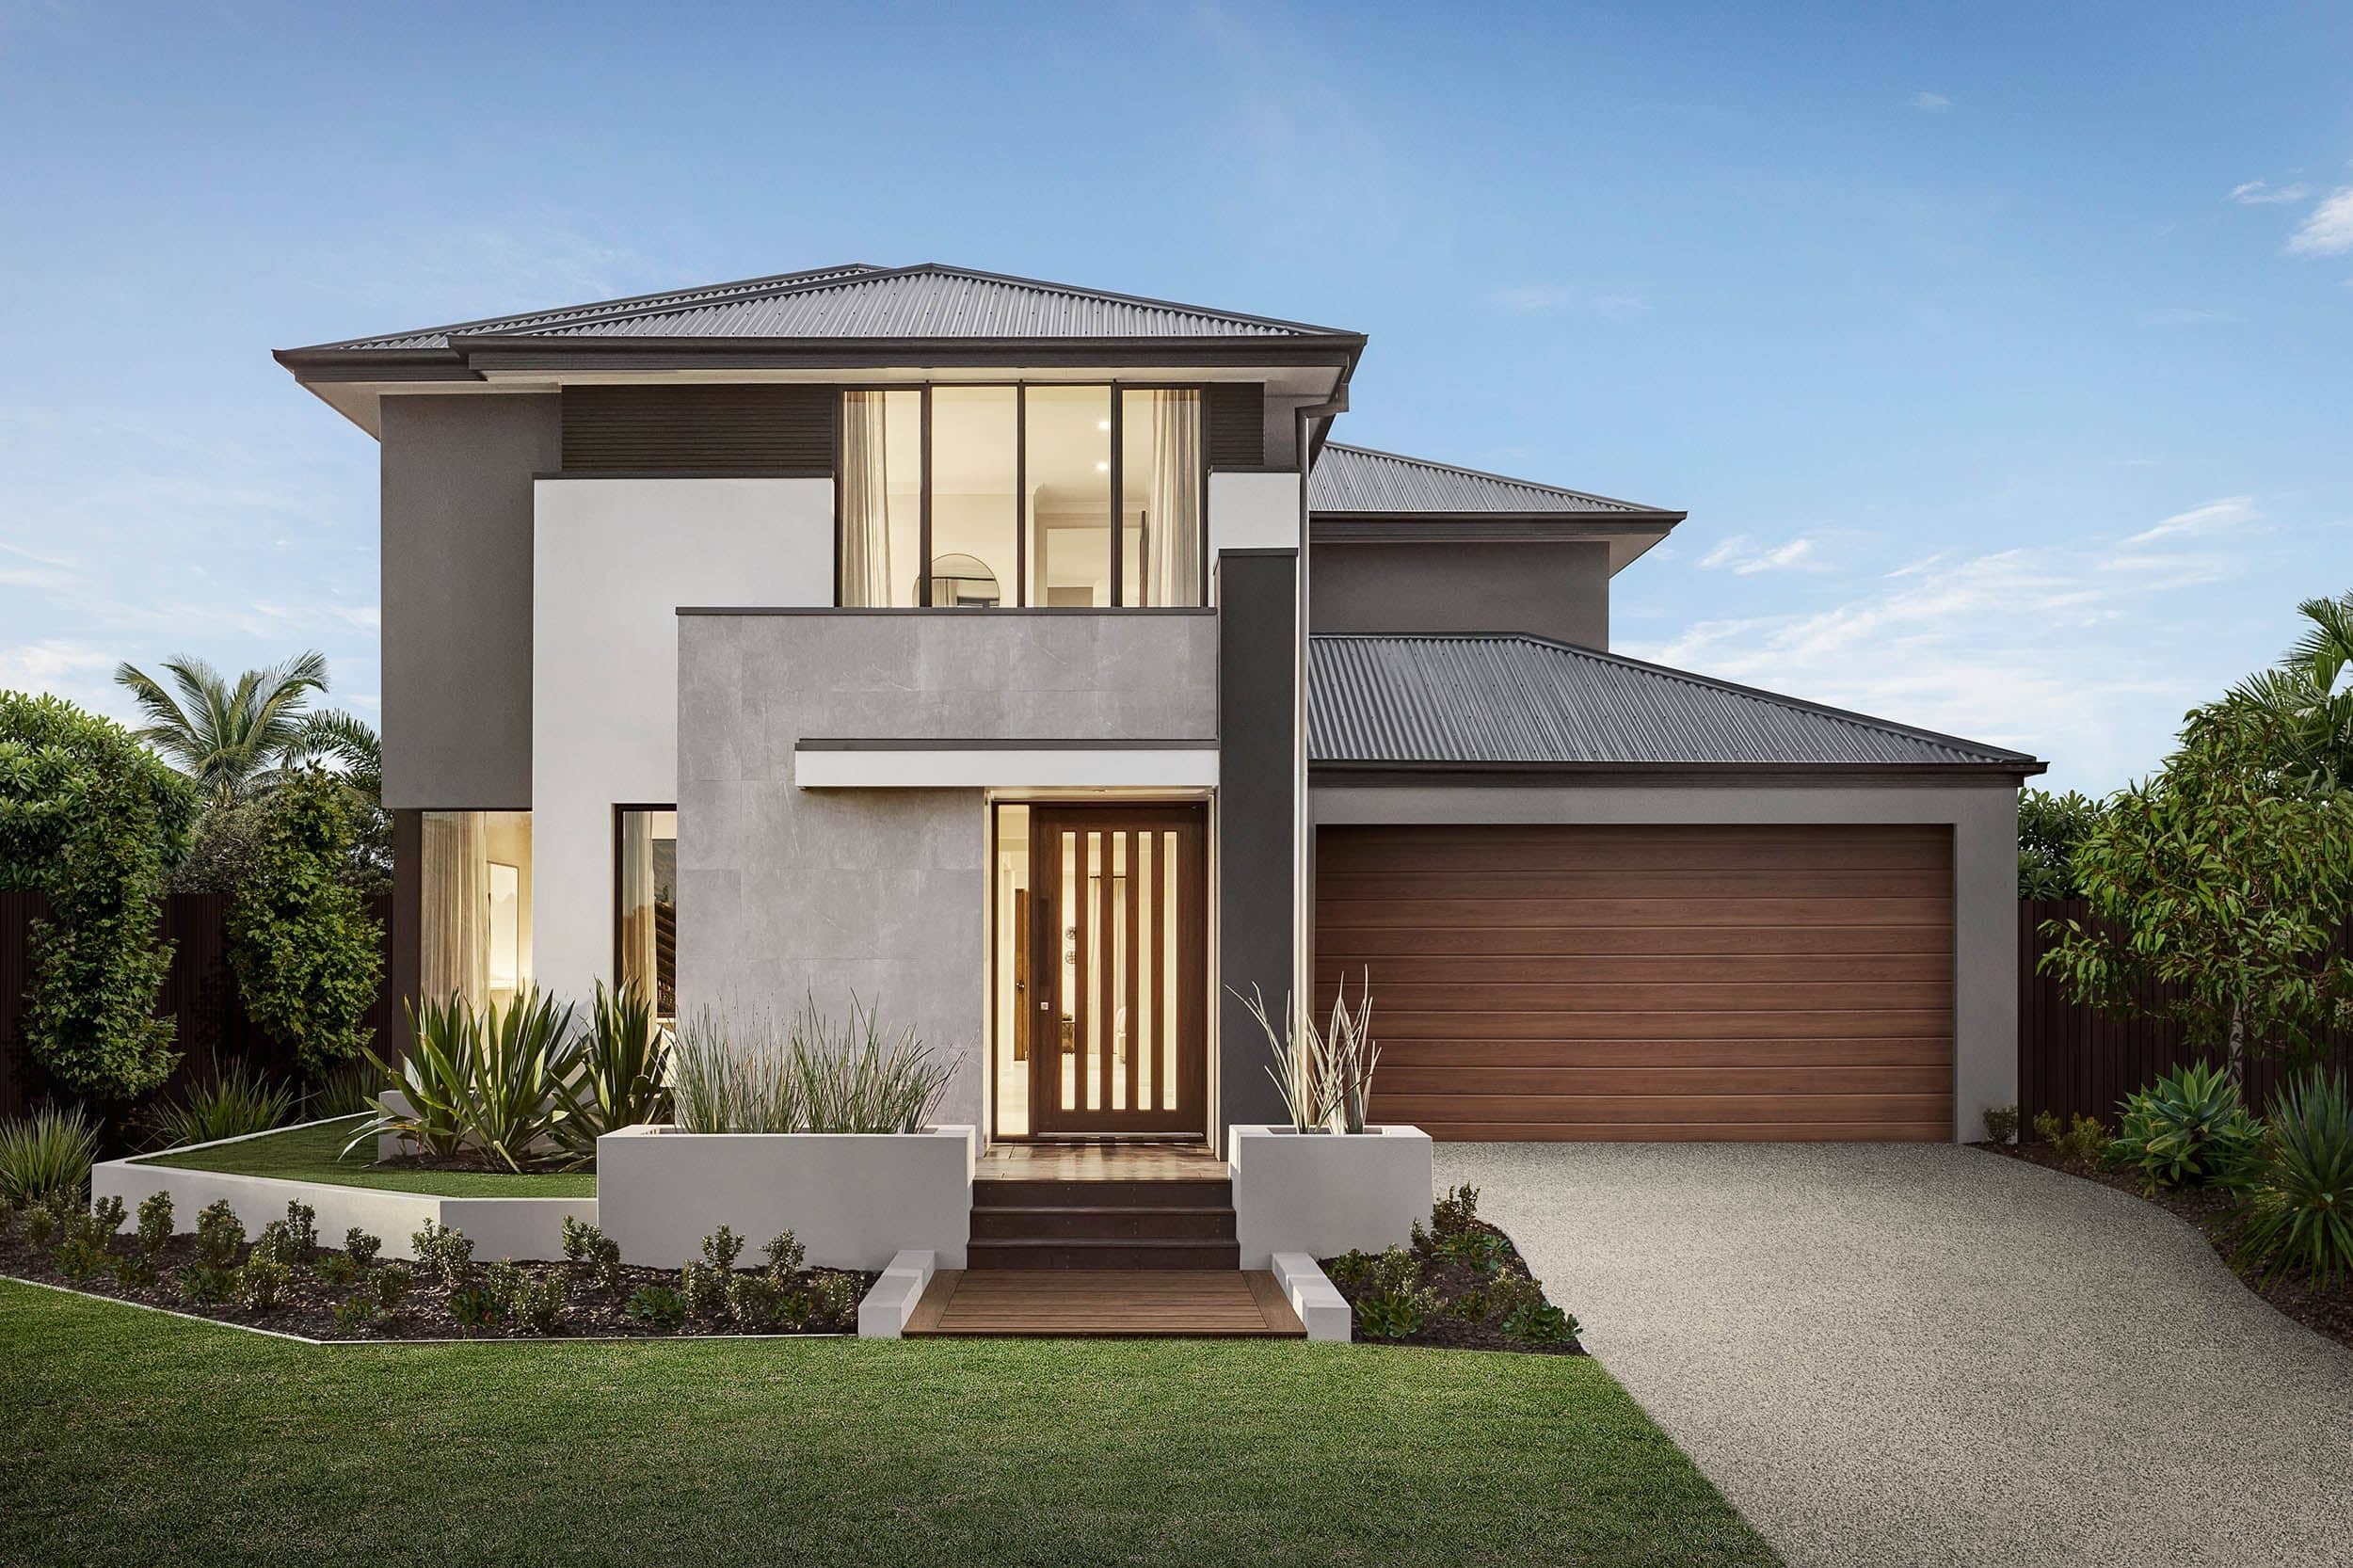 metricon savannah modern home facade design brown and grey exterior colours